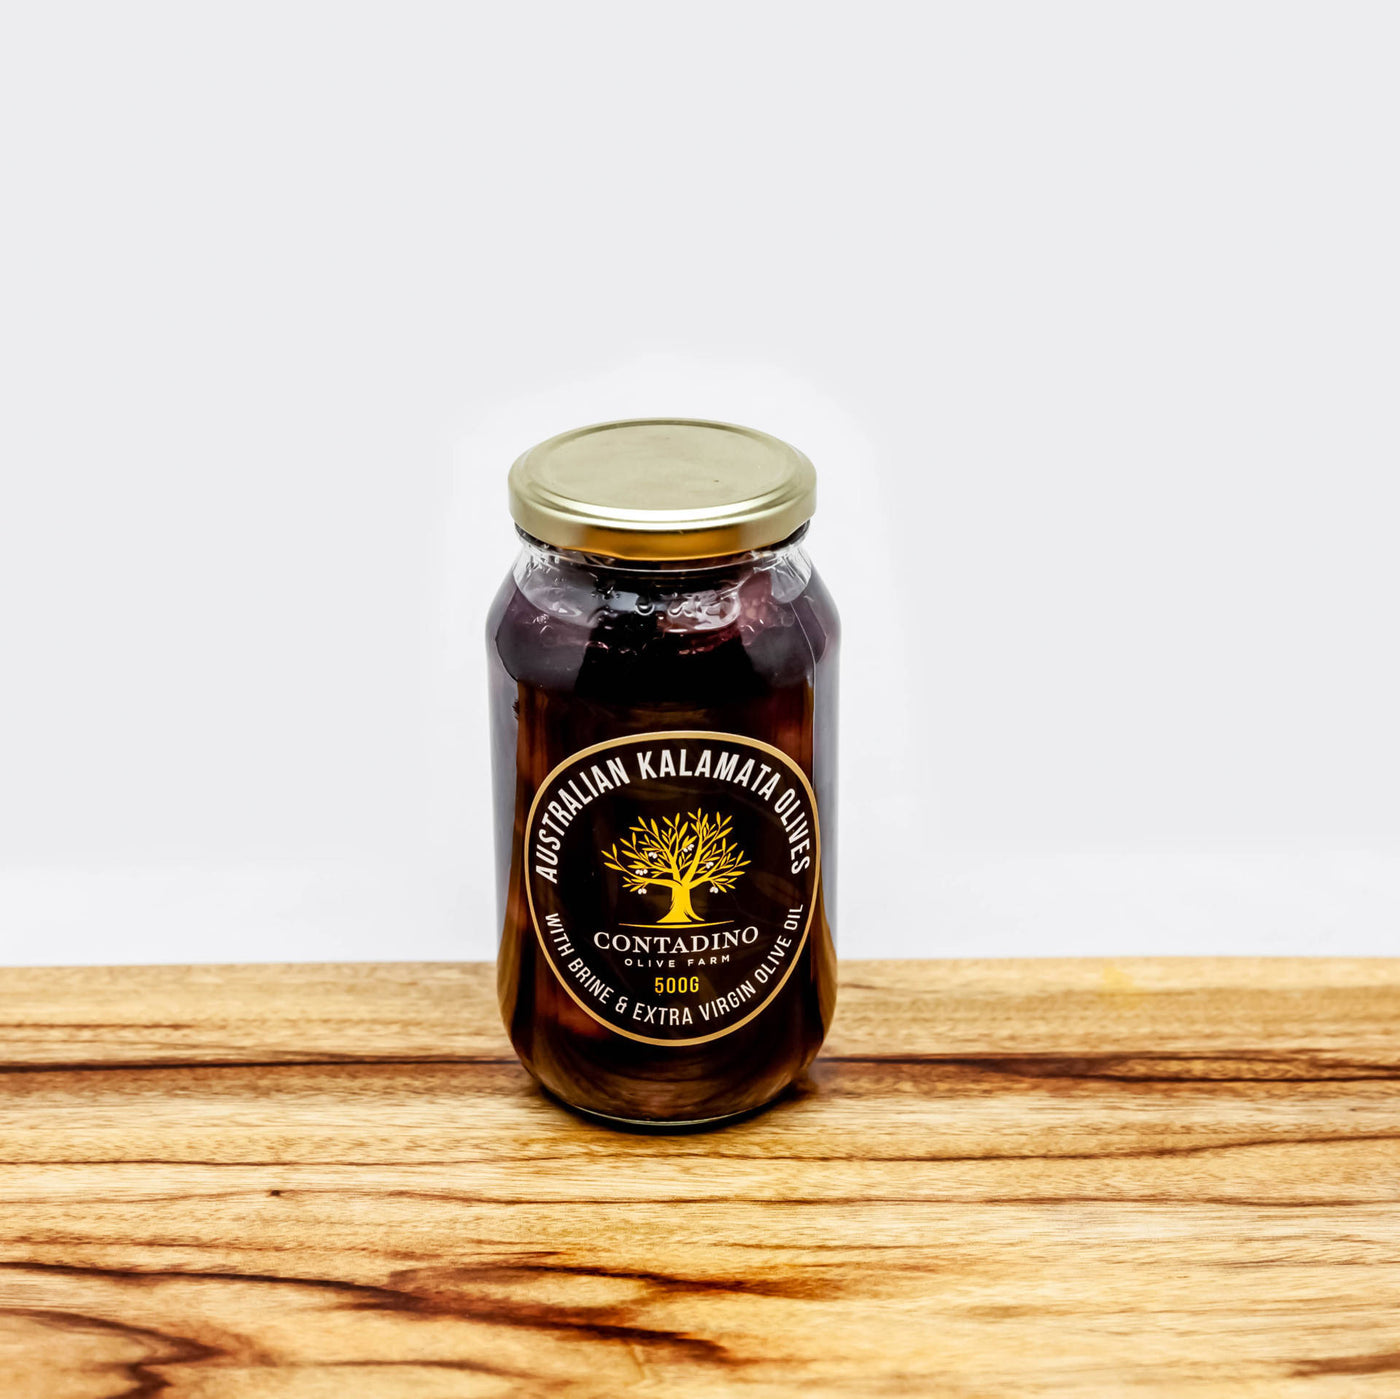 Australian Kalamata Olives - Brine & Extra Virgin Olive Oil